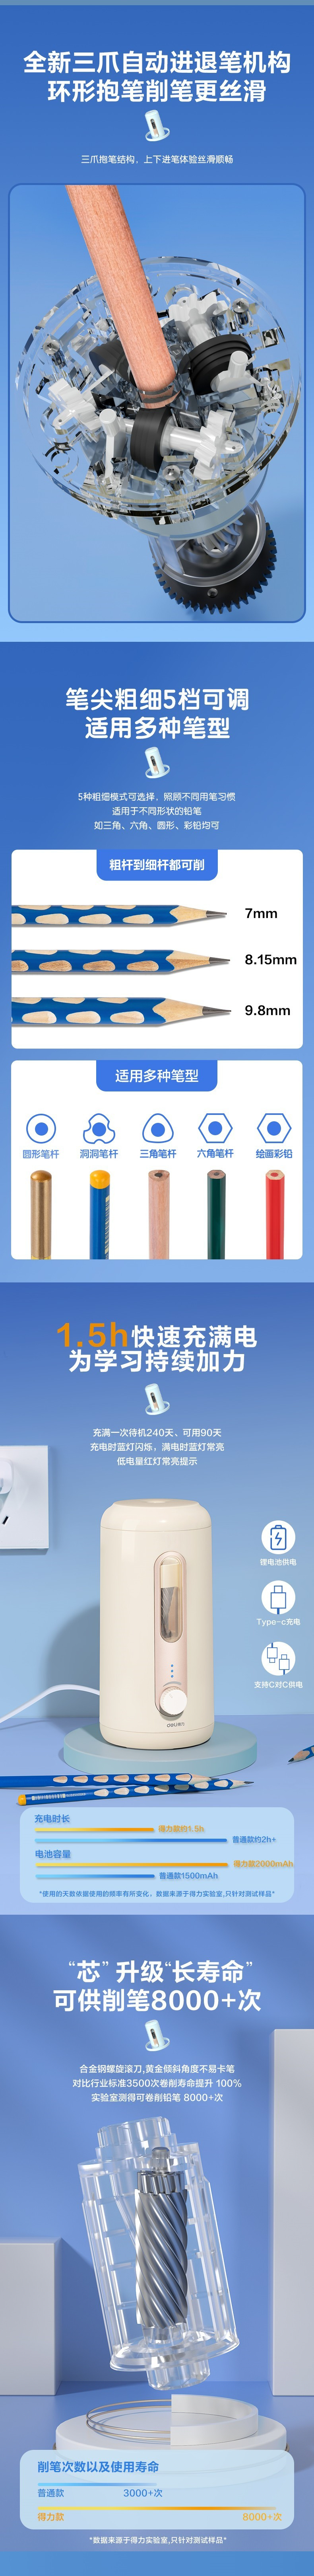 得力/deli VA10大口径全自动削笔机 卷笔刀(米色)